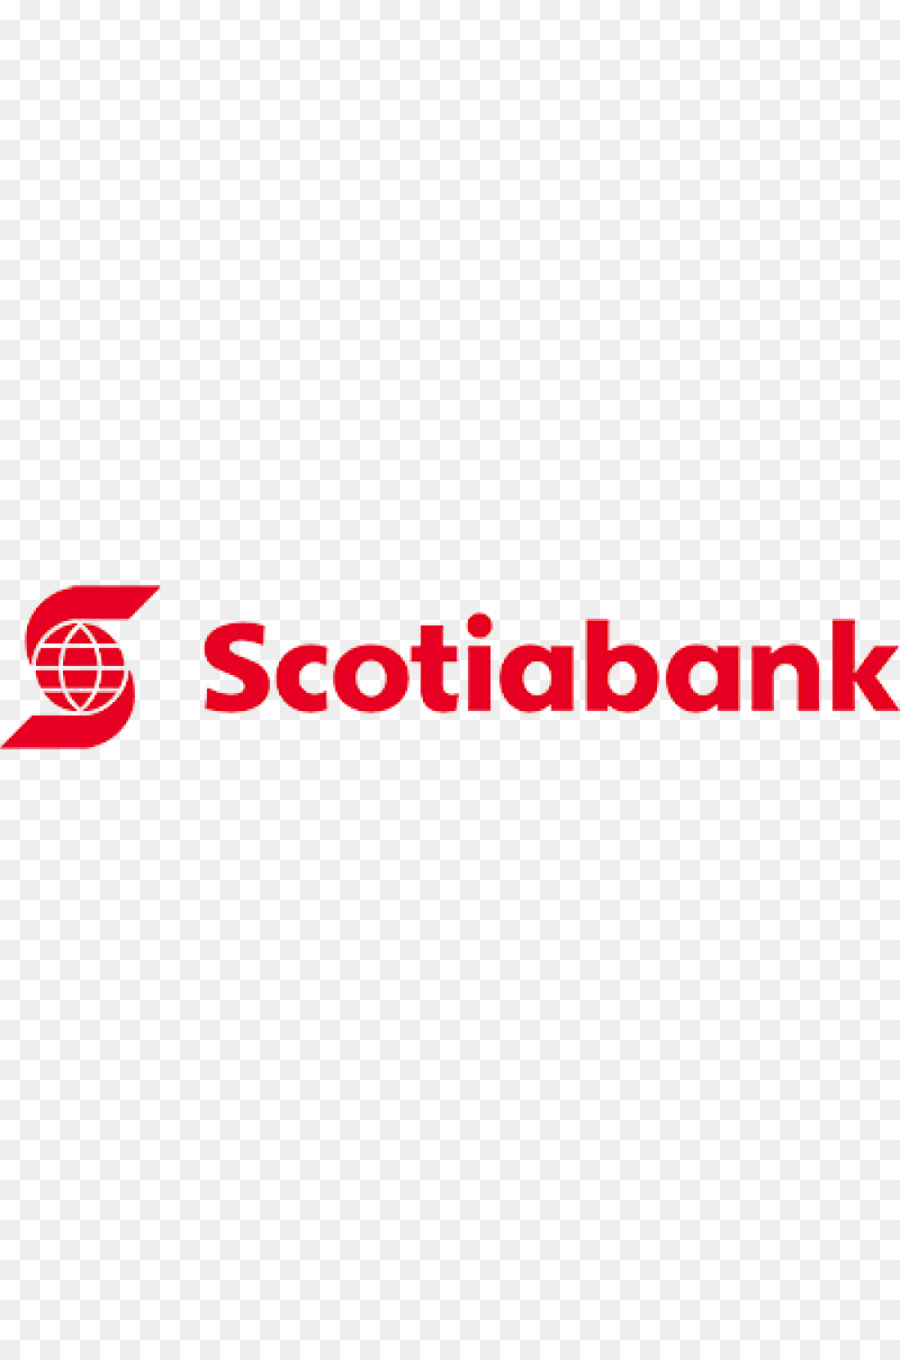 Banca di Montreal Scotiabank Business Toronto–Dominion Bank Finanza - illustrazione di moda donna